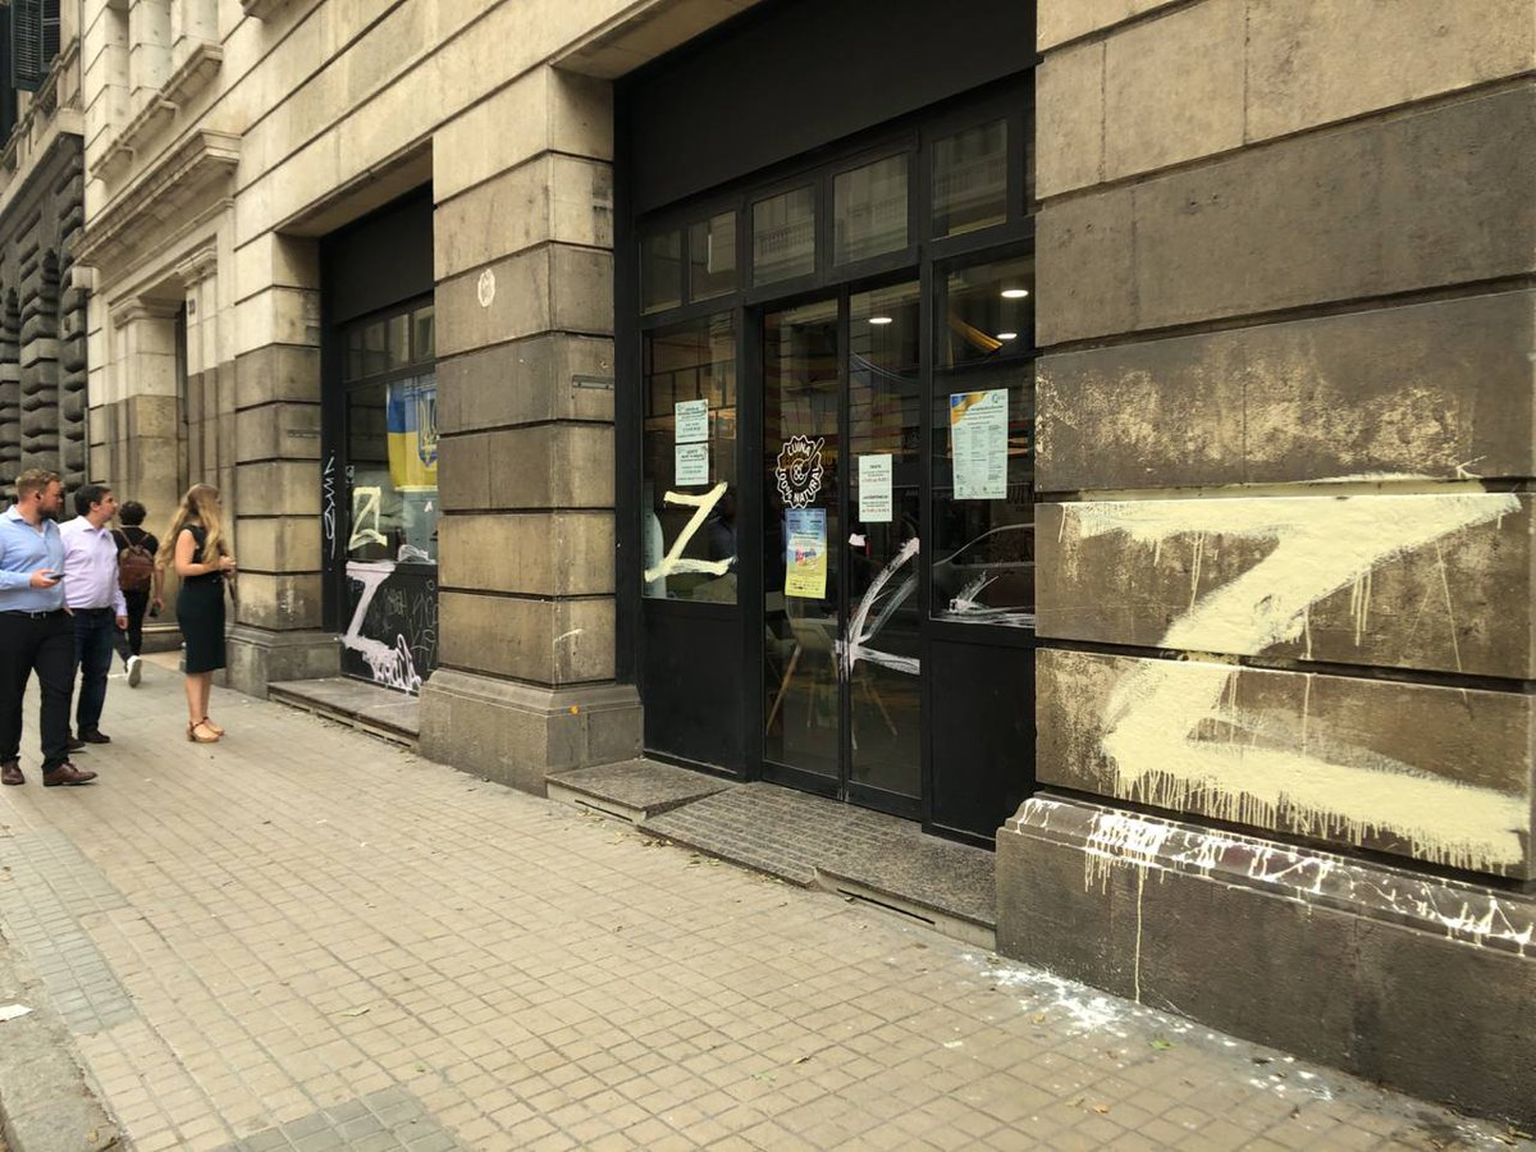 Putinistid vandaalitsesid 14. septembril Barcelonas asuvat Ukraina abikeskust.
https://twitter.com/HromadskeRadio/status/1570067647672328193?s=20&t=fVQgiYd9naCcAWgk0BD-Tw